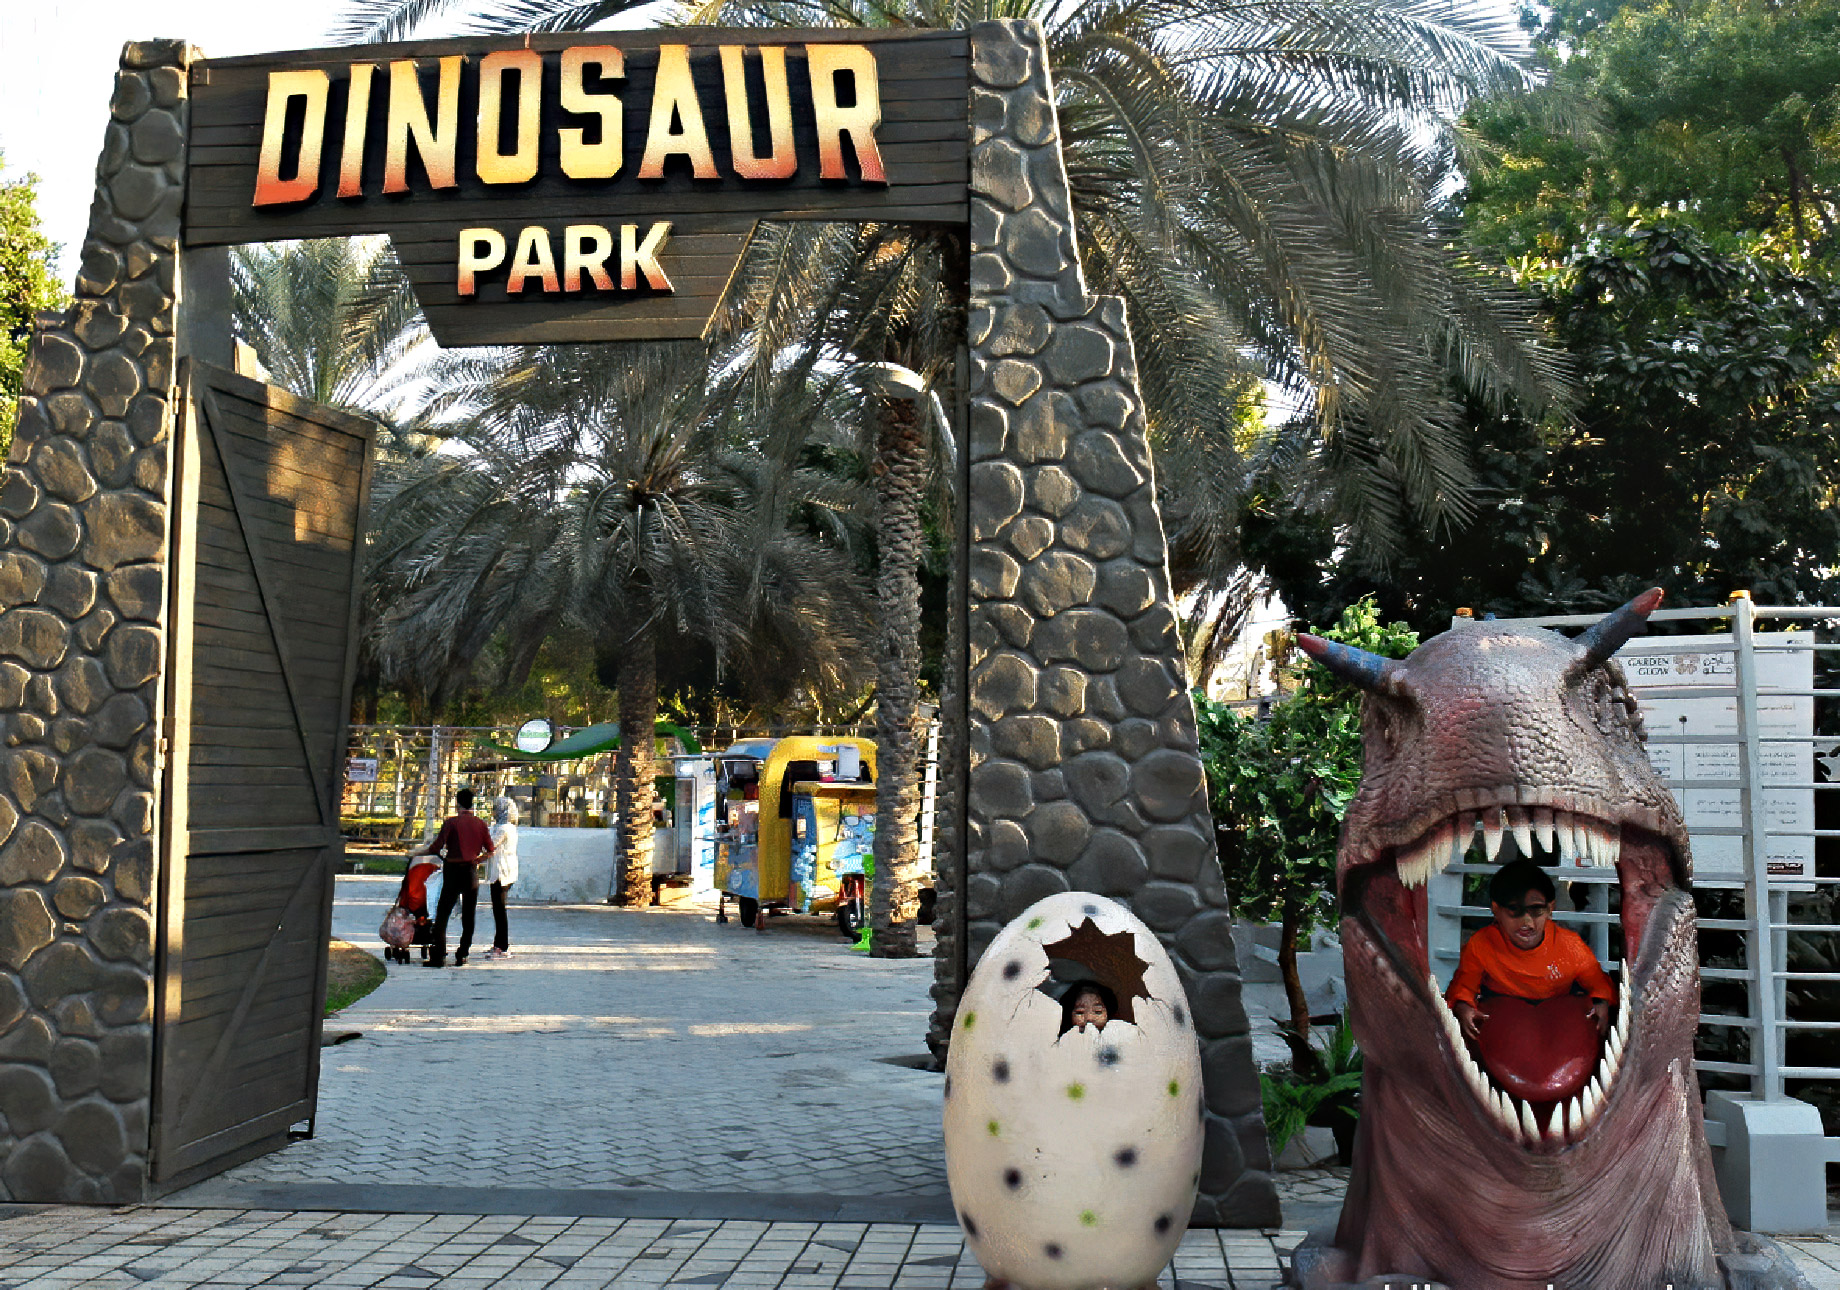 Dinosaur Park - Dubai, UAE